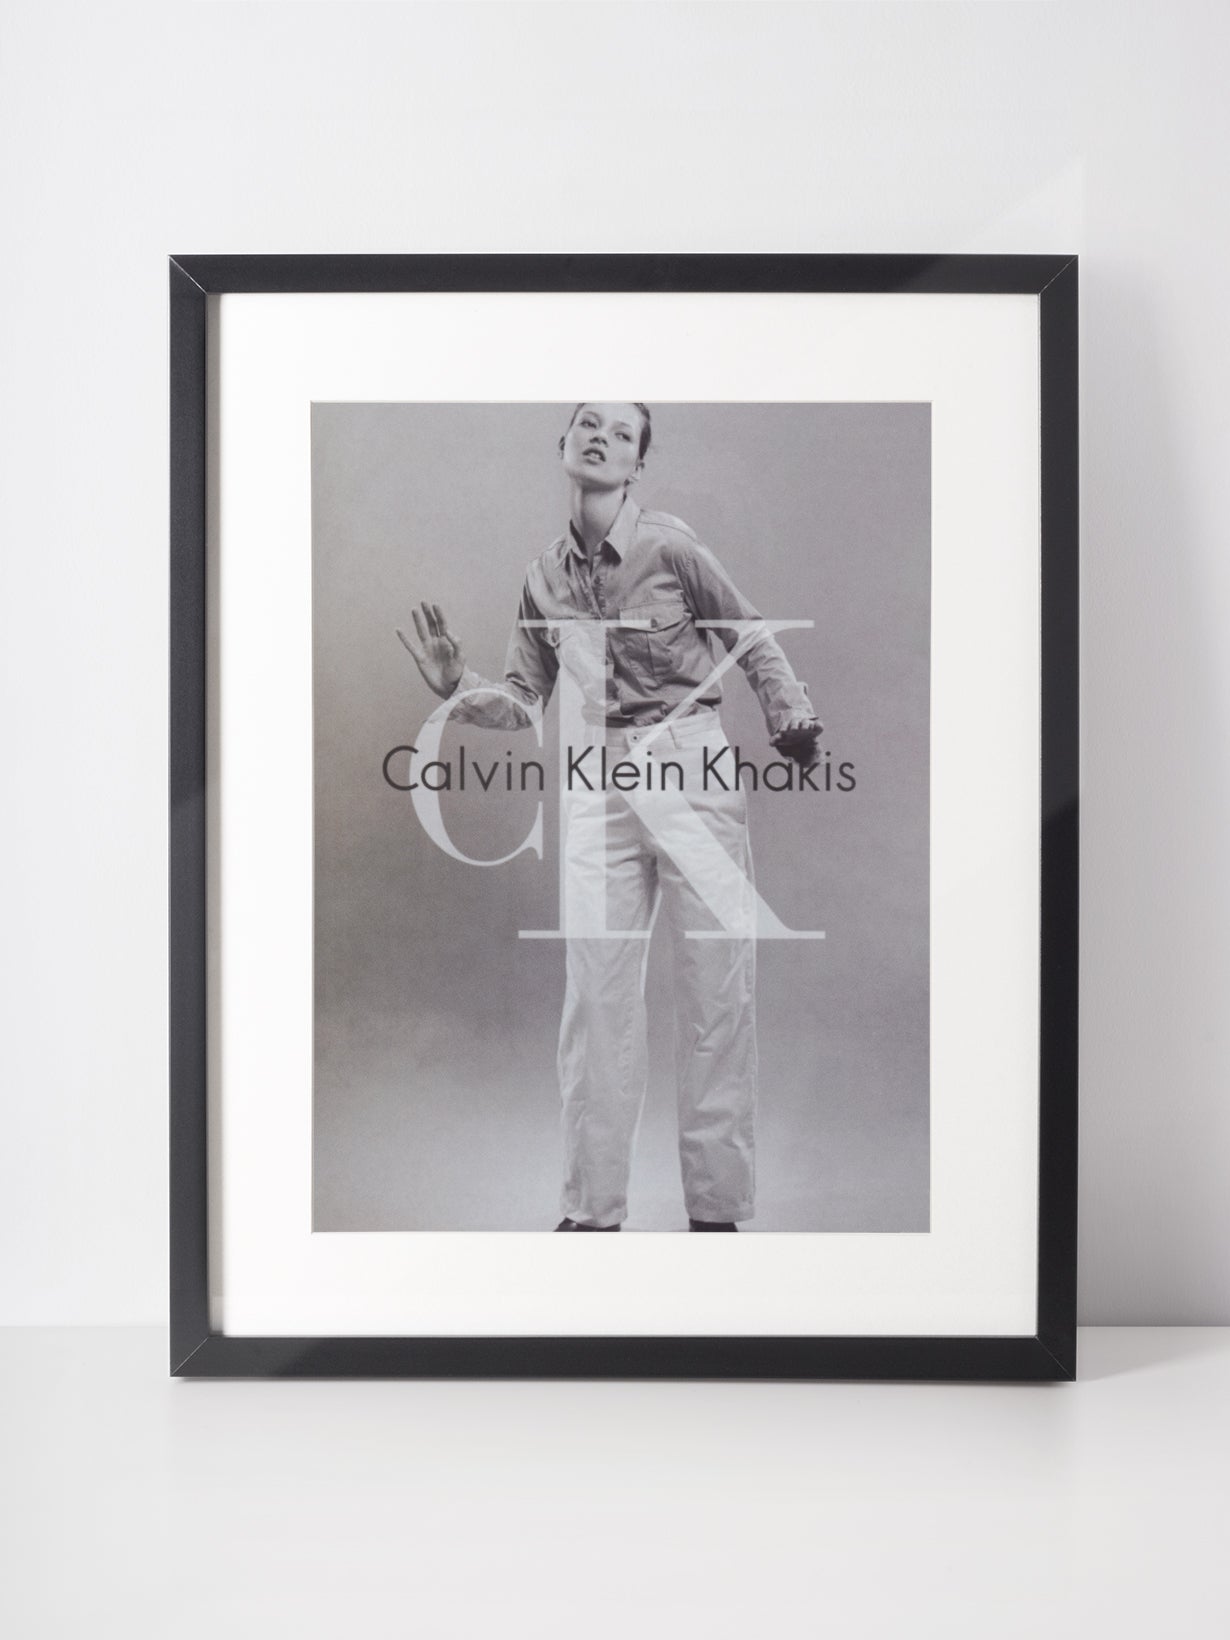 CALVIN KLEIN 1996 Khakis Vintage Advertisement Fashion Kate Moss – VINTAGE  VON WERTH